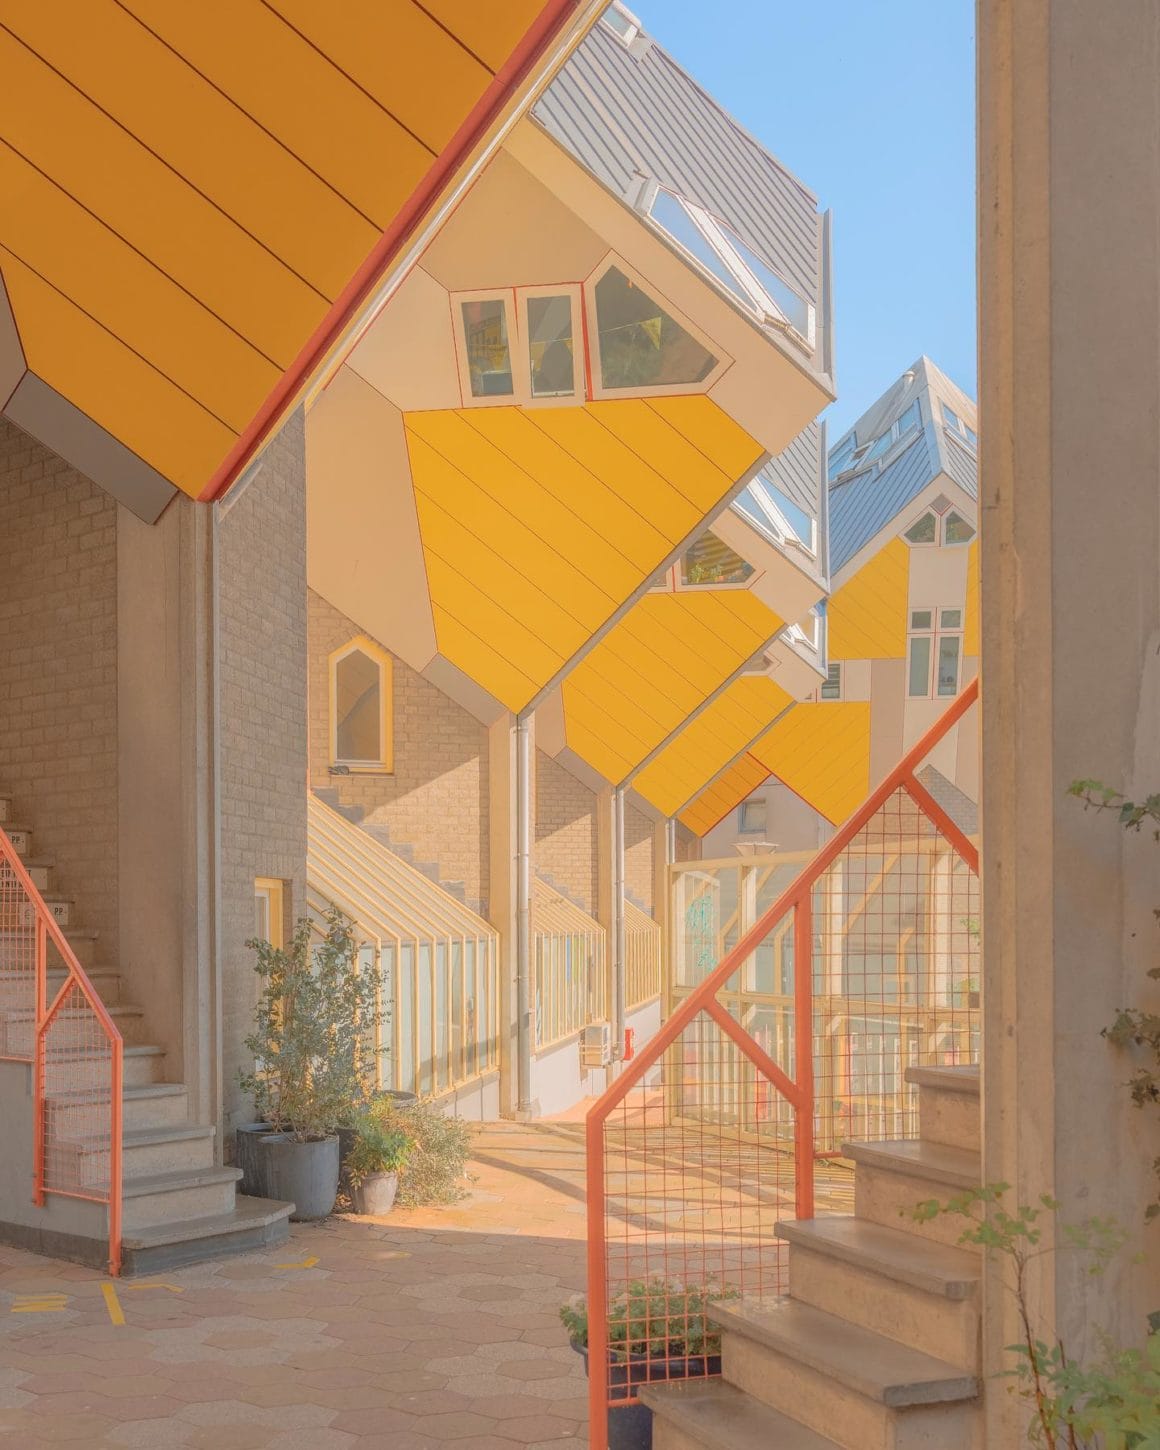 Photographie de l'architecture des Cube Houses à Rotterdam par Teresa Freitas